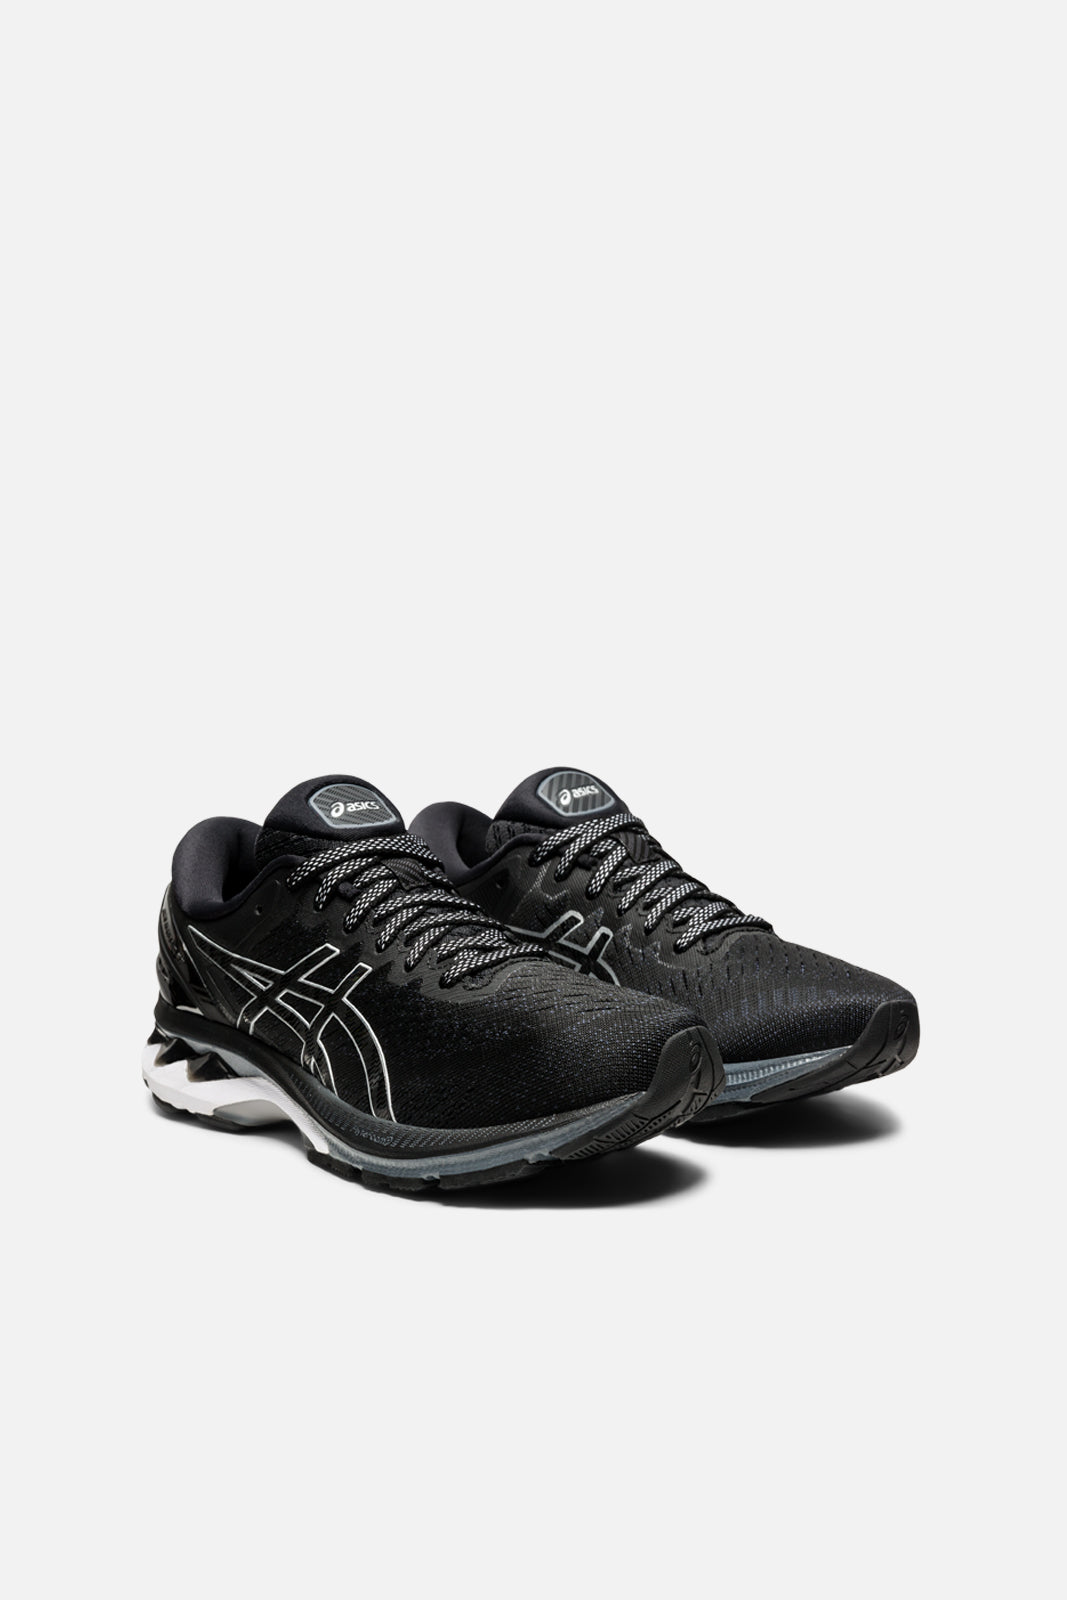 27 shoes black